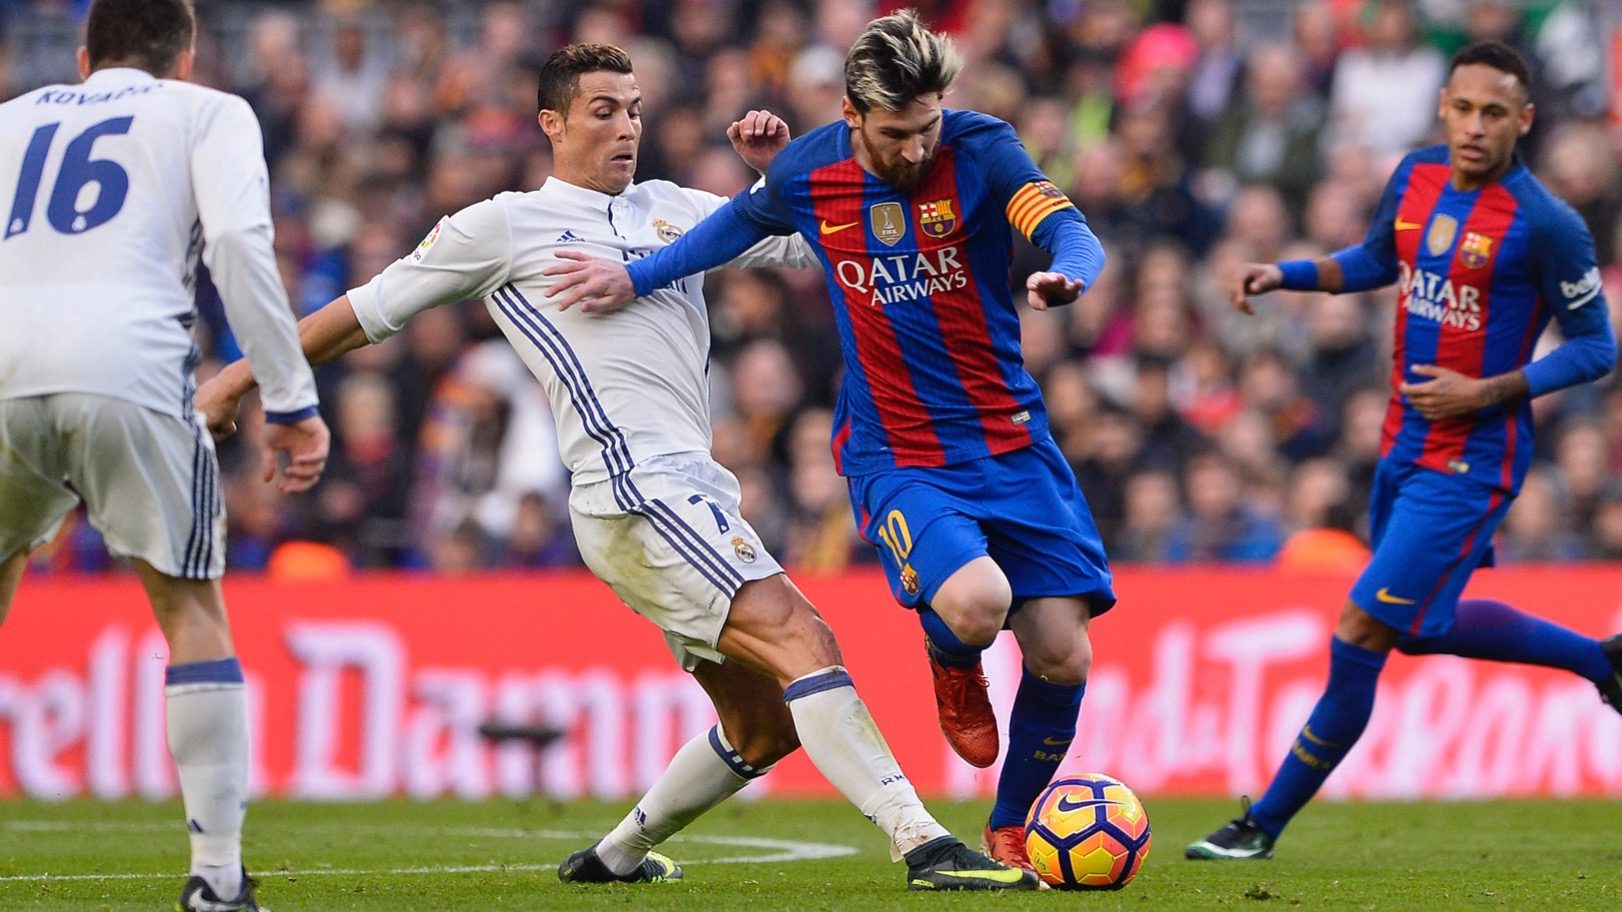 Lionel Messi vs Cristiano Ronaldo